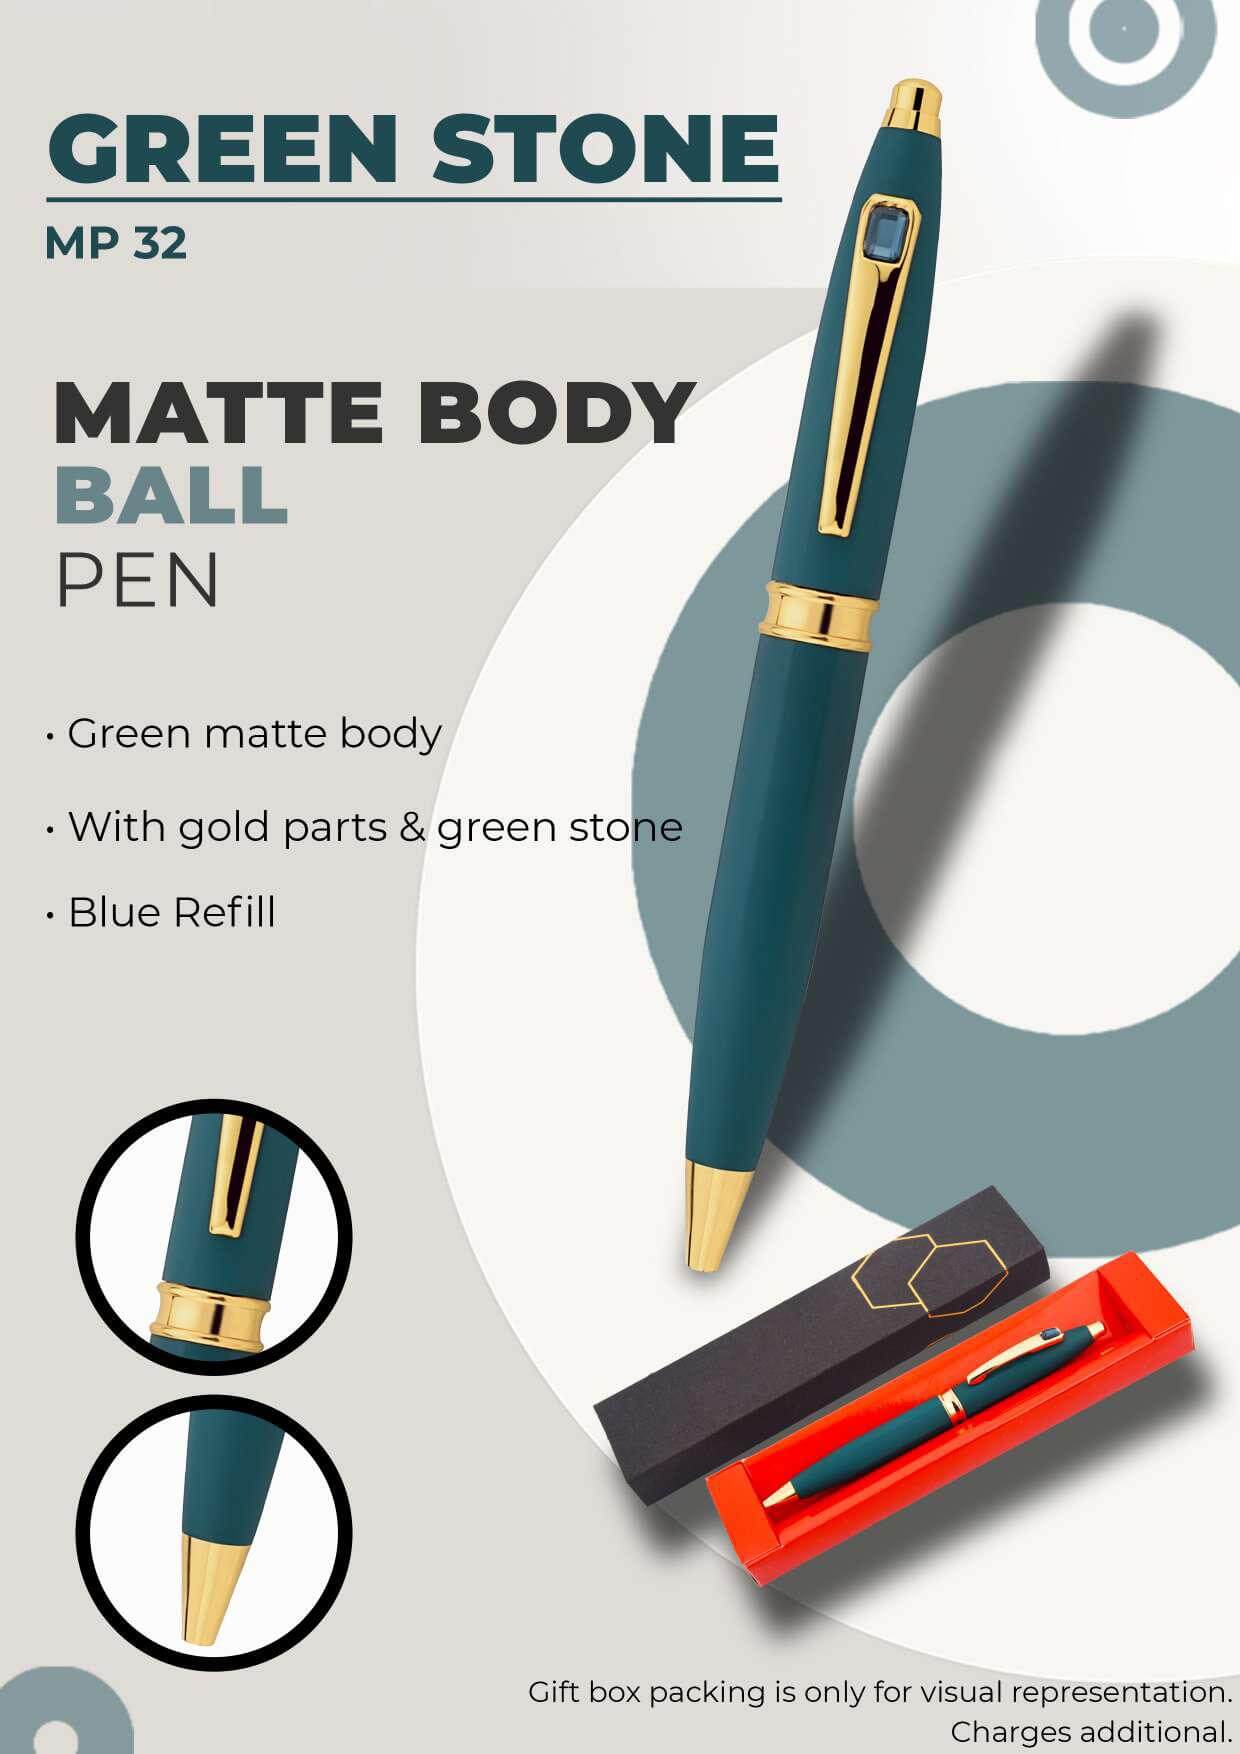 Matte Body Ball Pen Green Stone